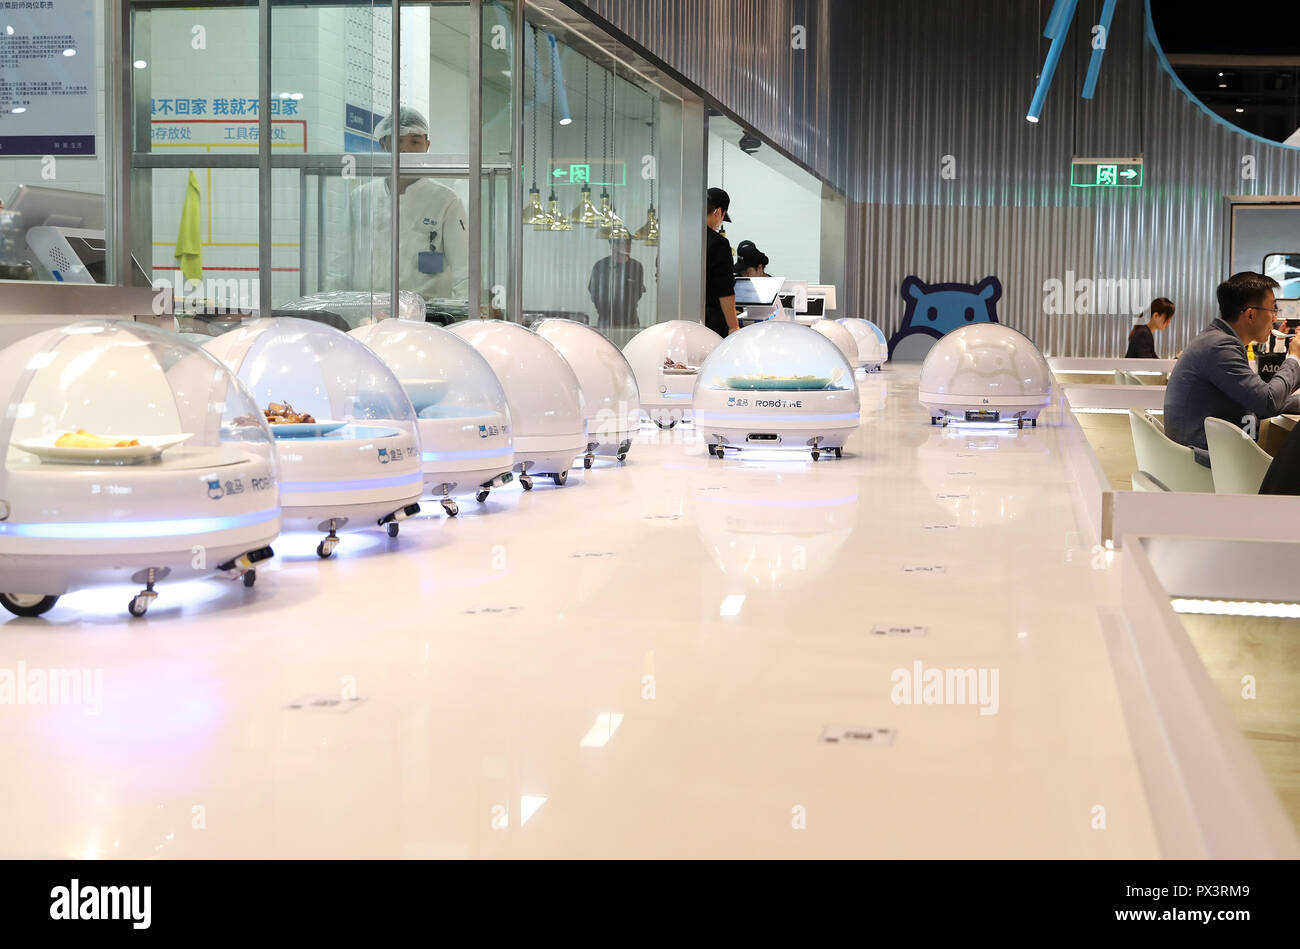 Shanghai. 15 Oct, 2018. AGV (vehículo guiado automatizado) línea de robots para servir comida a los clientes en un elegante restaurante operado por e-commerce chino Alibaba gigante en el Centro de Exhibiciones y Convenciones Nacionales en China oriental de Shanghai, el 15 de octubre de 2018. Crédito: Fang Zhe/Xinhua/Alamy Live News Foto de stock